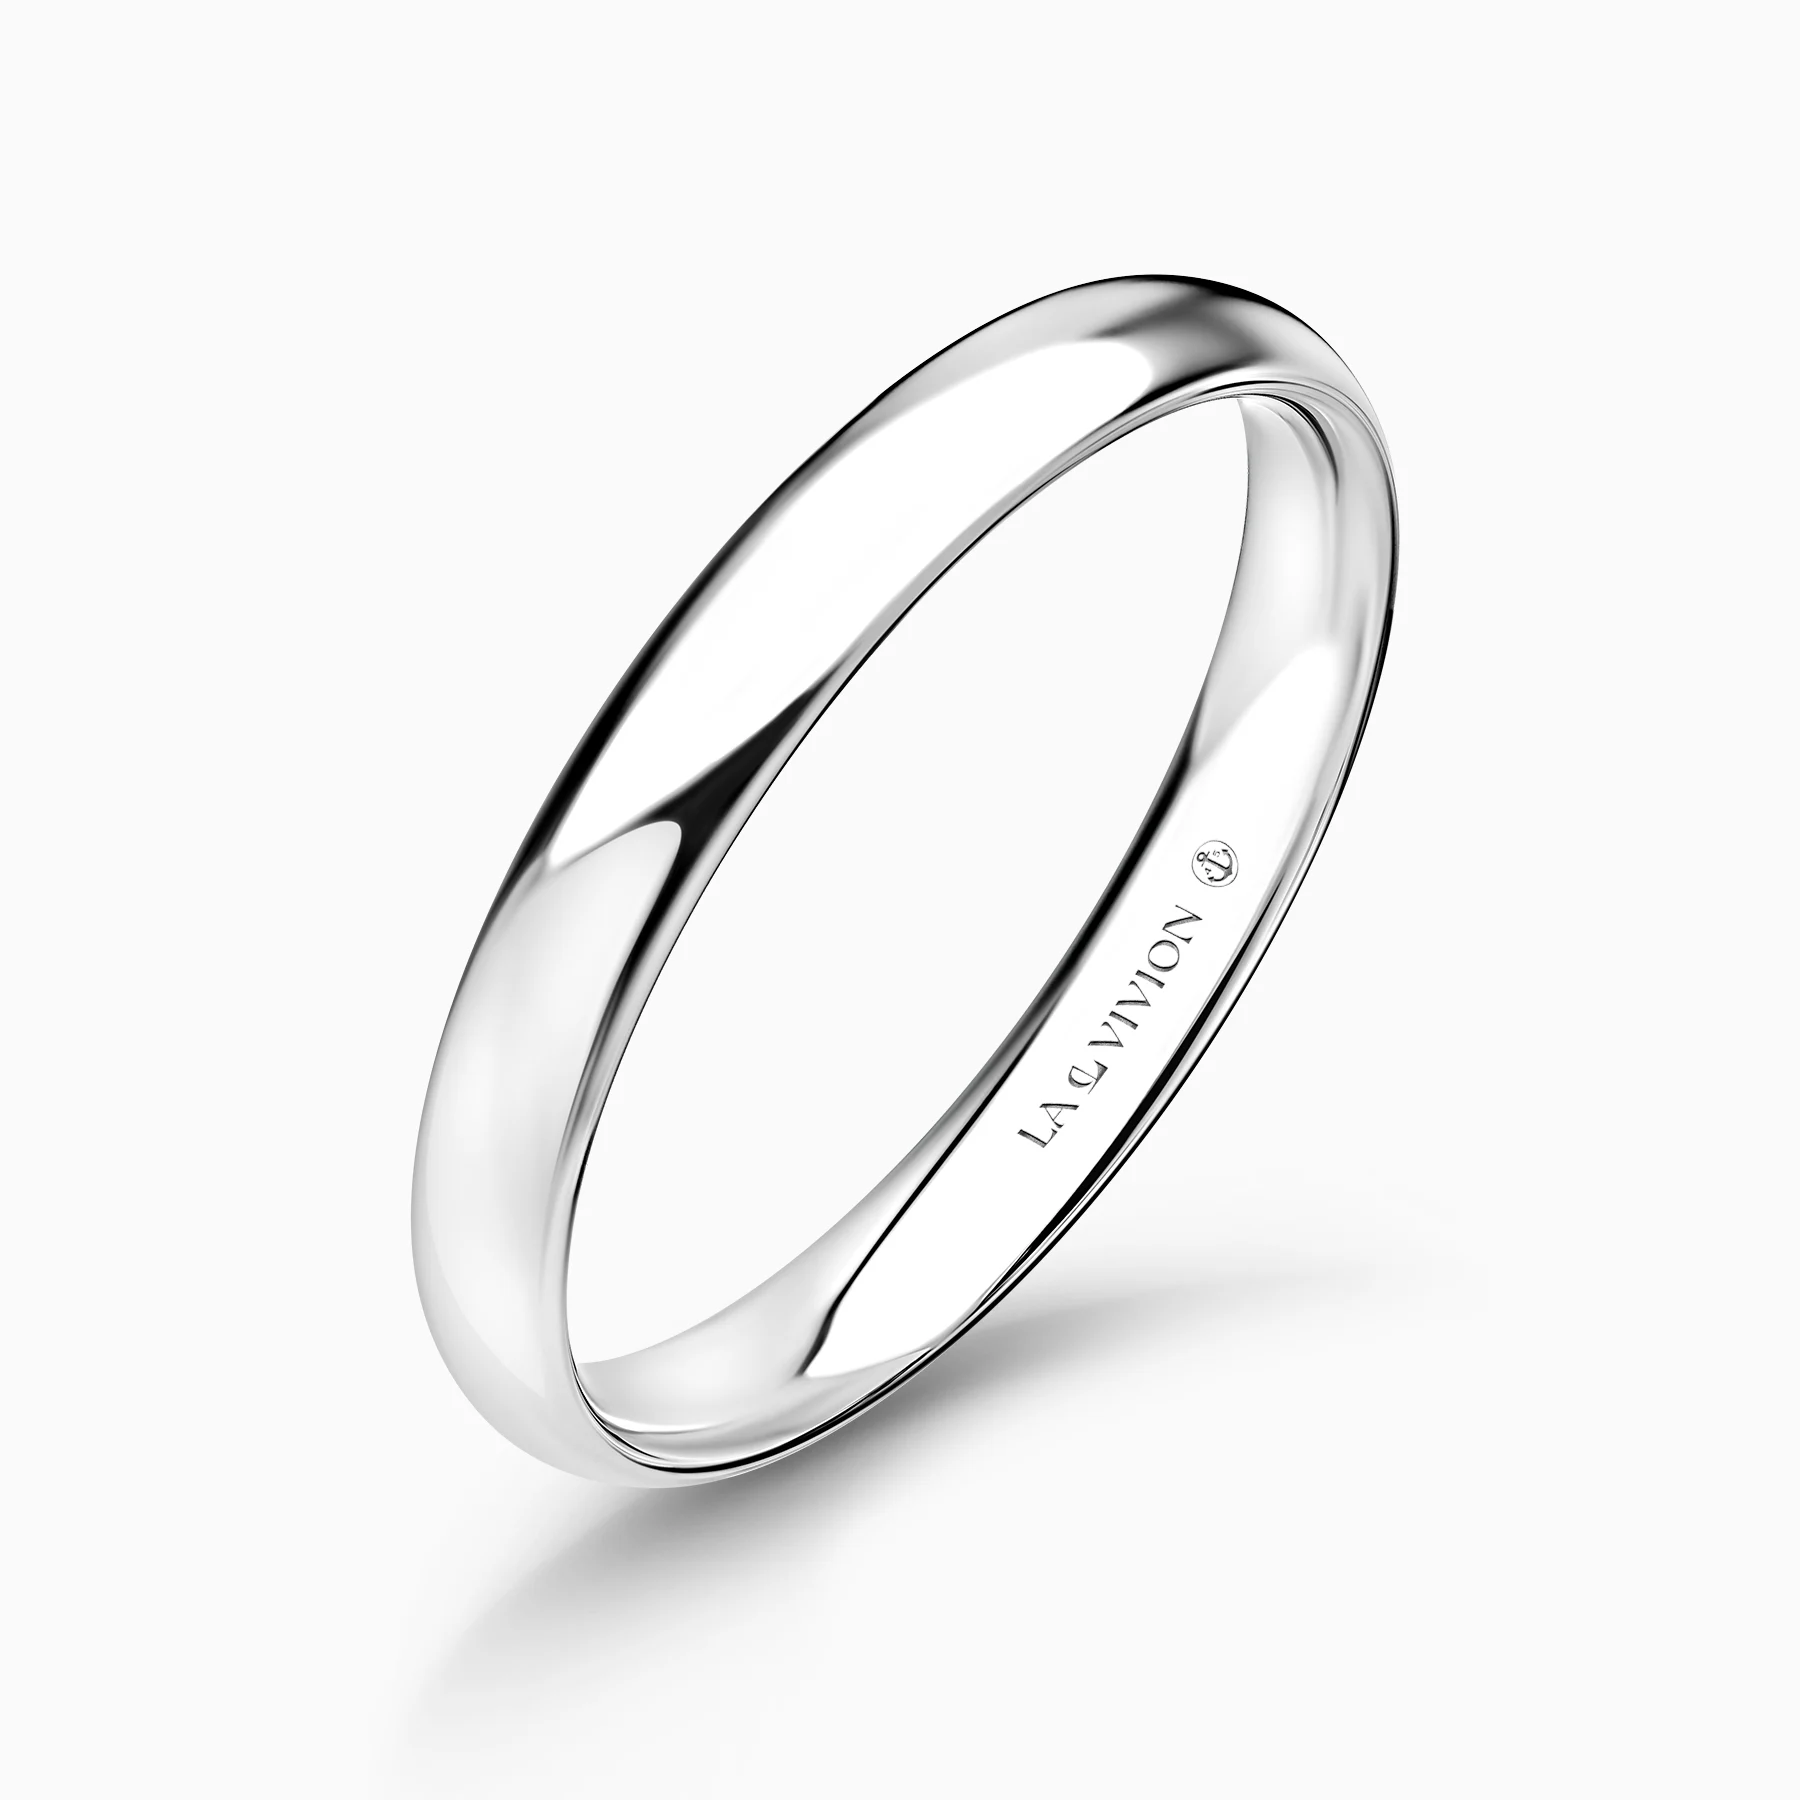 Обручальное кольцо Classiques 3 mm (Классика)